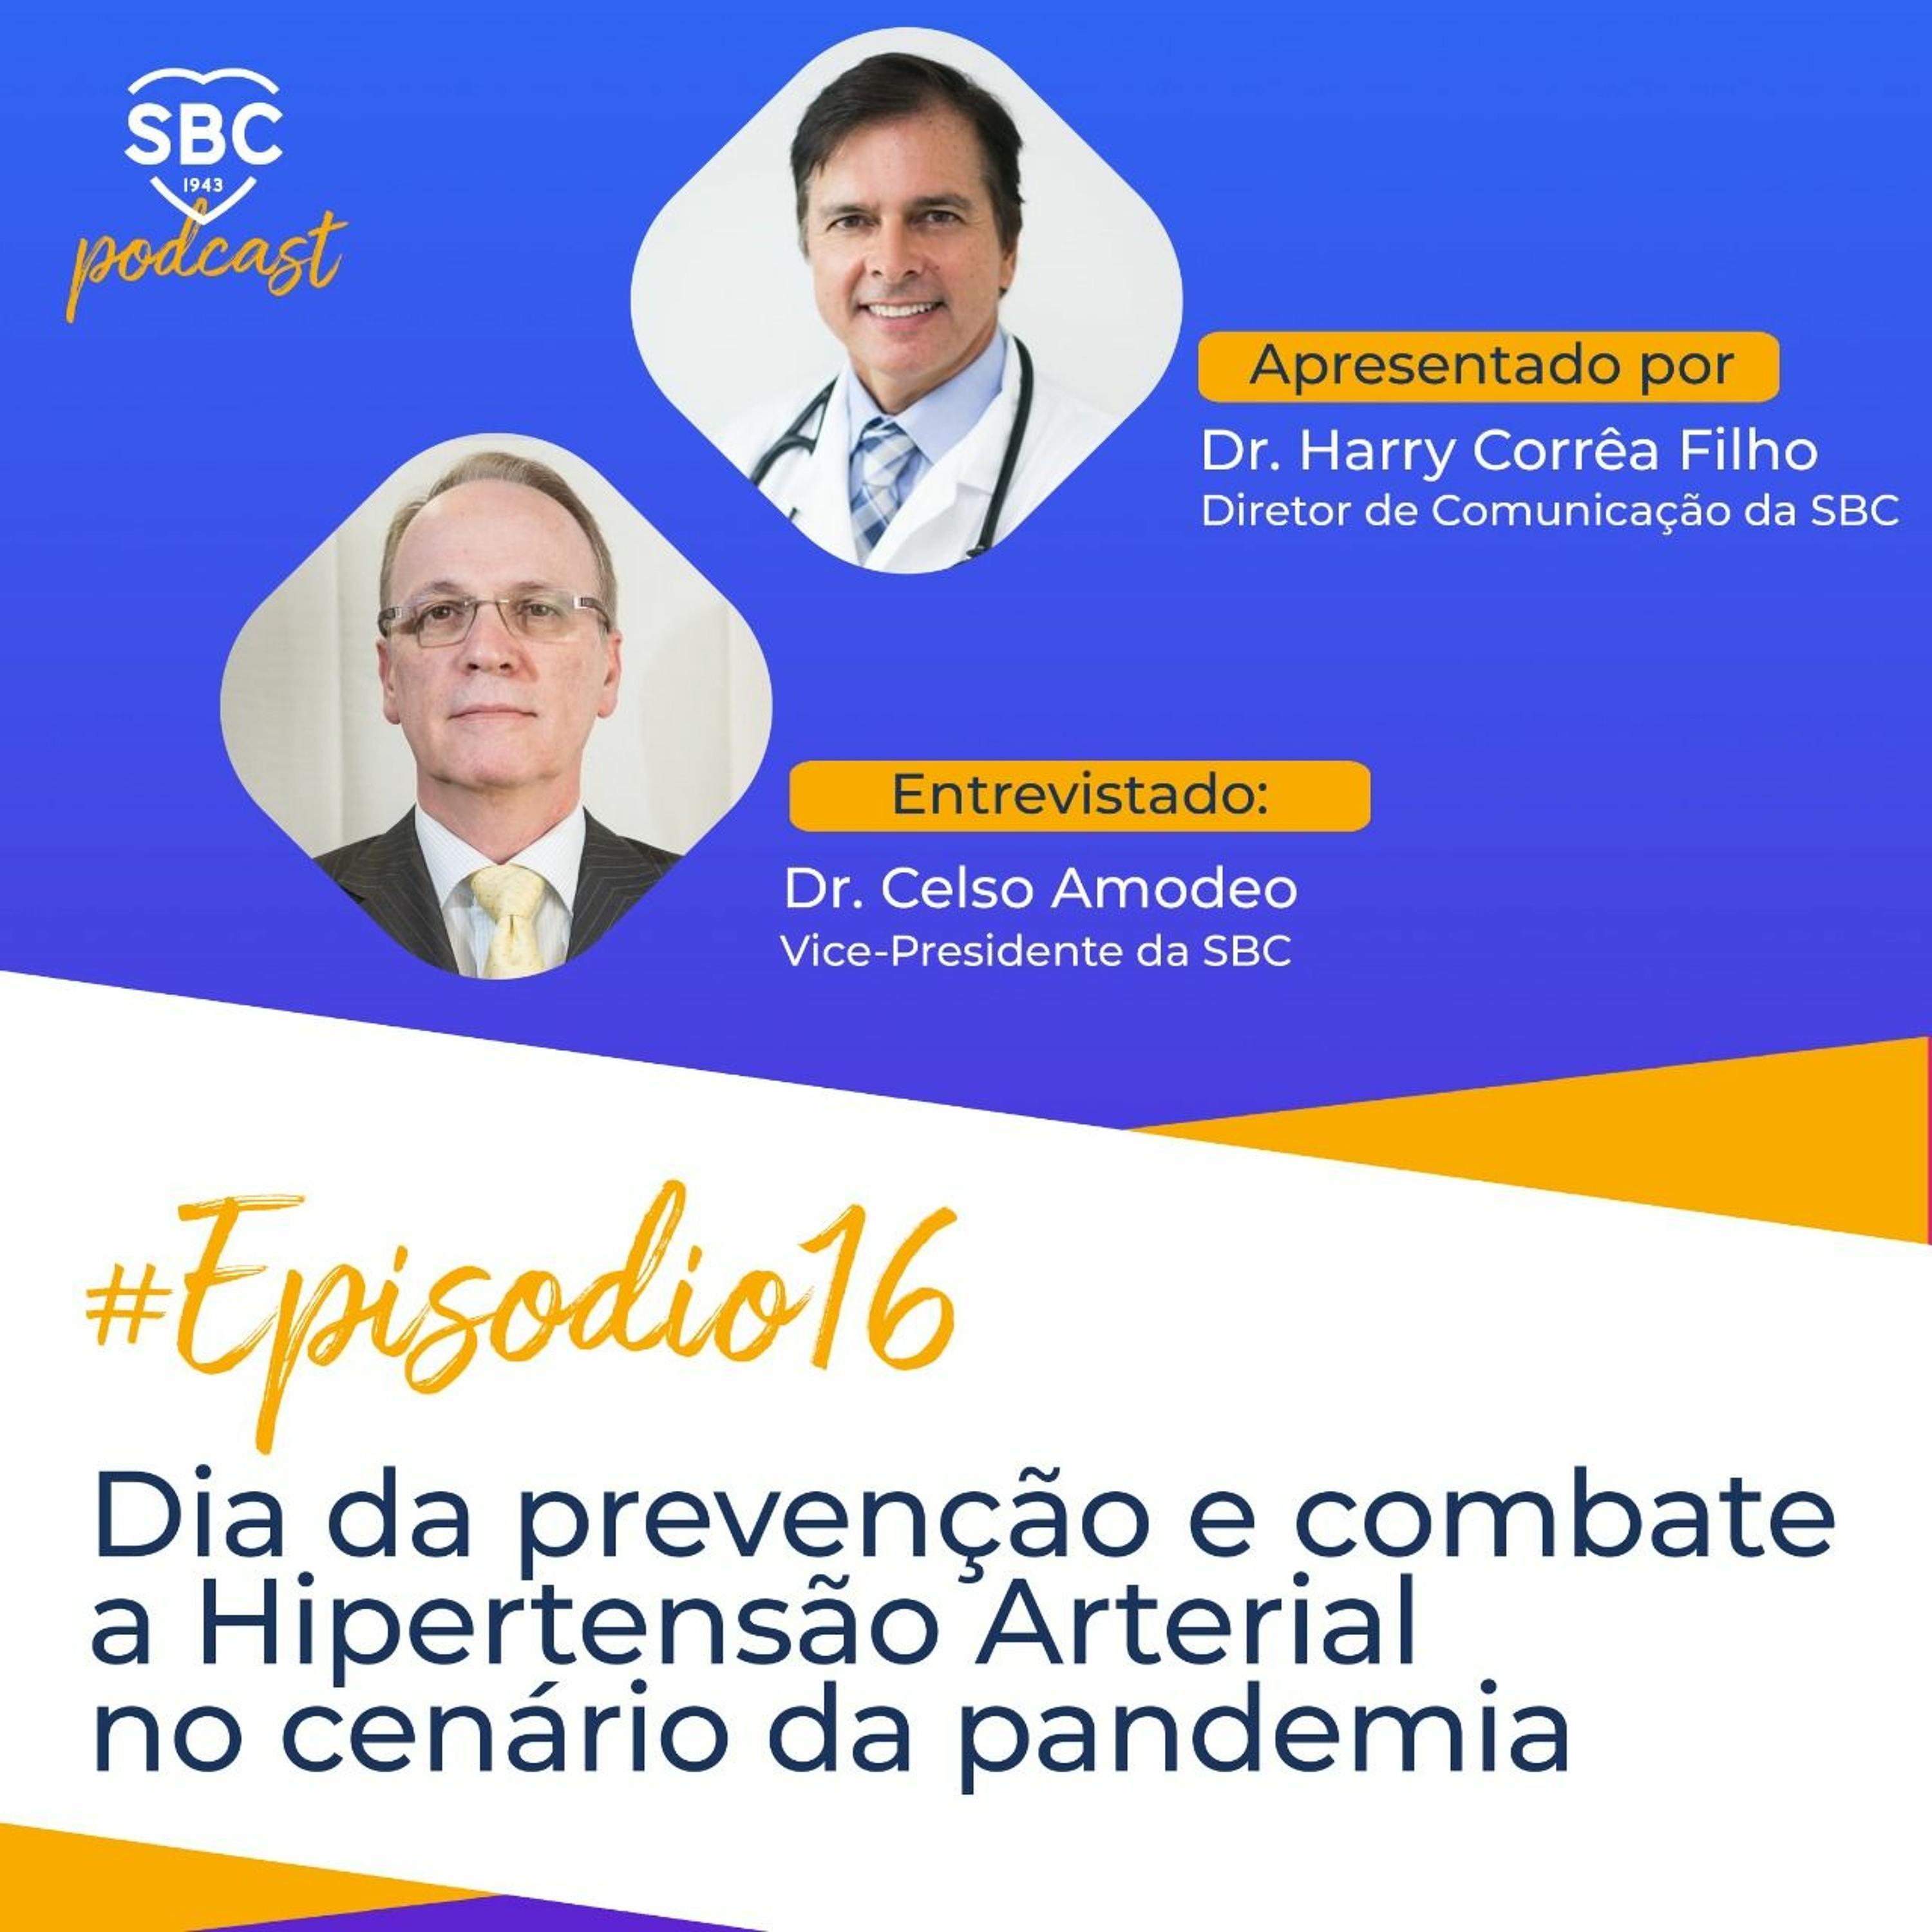 A hipertensão arterial é uma das doenças mais prevalentes e uma das principais causas de morte no Brasil e no mundo. Neste momento de pandemia do novo coronavírus, torna-se mais um importante risco para os pacientes portadores de doenças cardiovasculares.<br /><br />Os hipertensos estão entre os principais alvos de complicações pela infecção de SARS-CoV-2, aumentando o risco de morte em 7,5%.<br />A Sociedade Brasileira de Cardiologia (SBC) recomenda que esses pacientes, assim como os demais portadores de doenças cardiovasculares, sigam seus tratamentos e permanecem em isolamento social.<br /><br />No 16º episódio do Podcast da SBC, o Dr. Celso Amodeo, Vice-Presidente da SBC, e o Dr. Harry Corrêa Filho, Diretor de Comunicação da SBC, abordam o tema diante da pandemia do COVID-19.